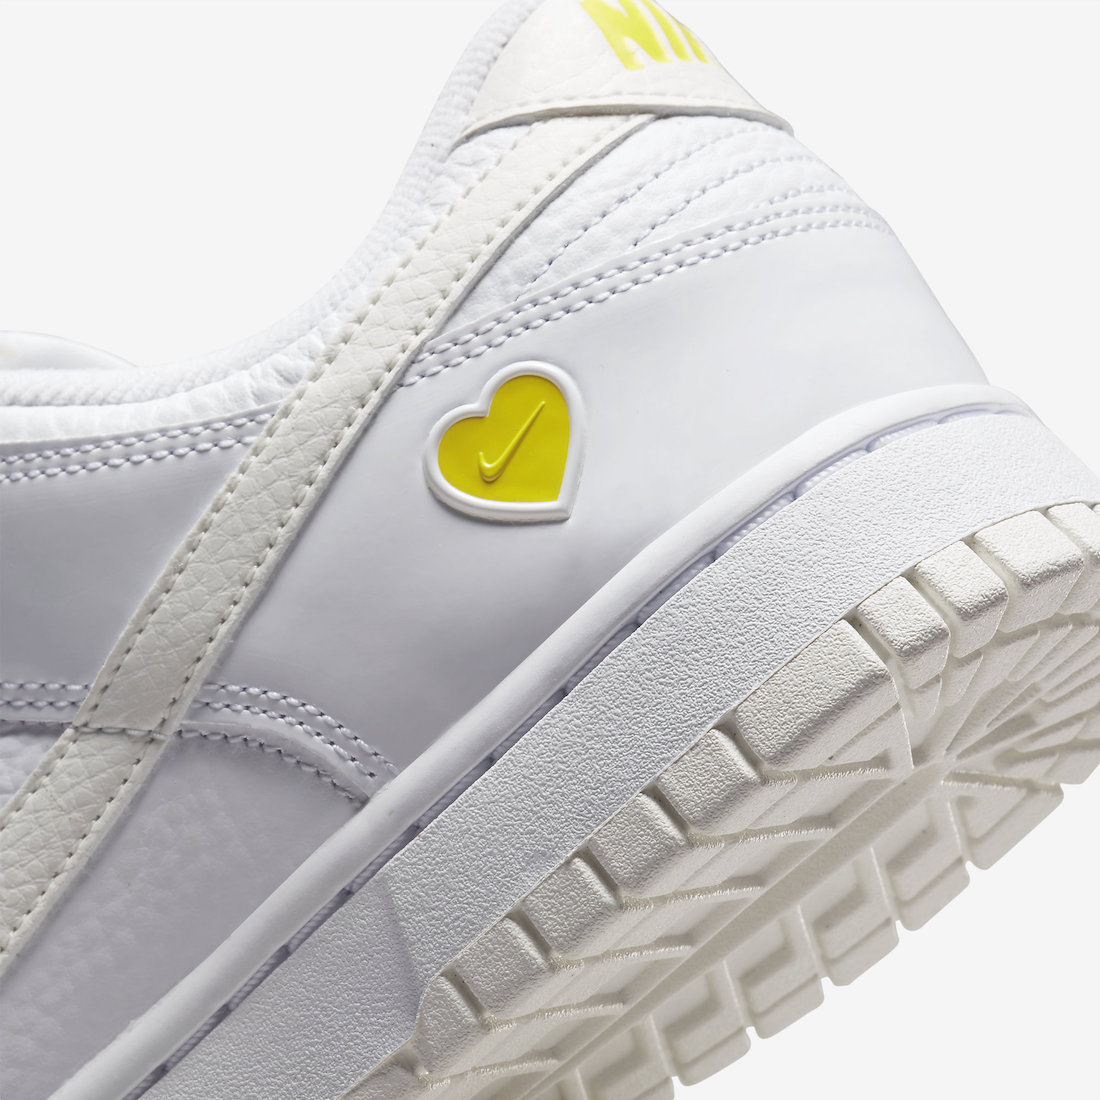 Nike Dunk Low Yellow Heart FD0803-100 Release Date Info